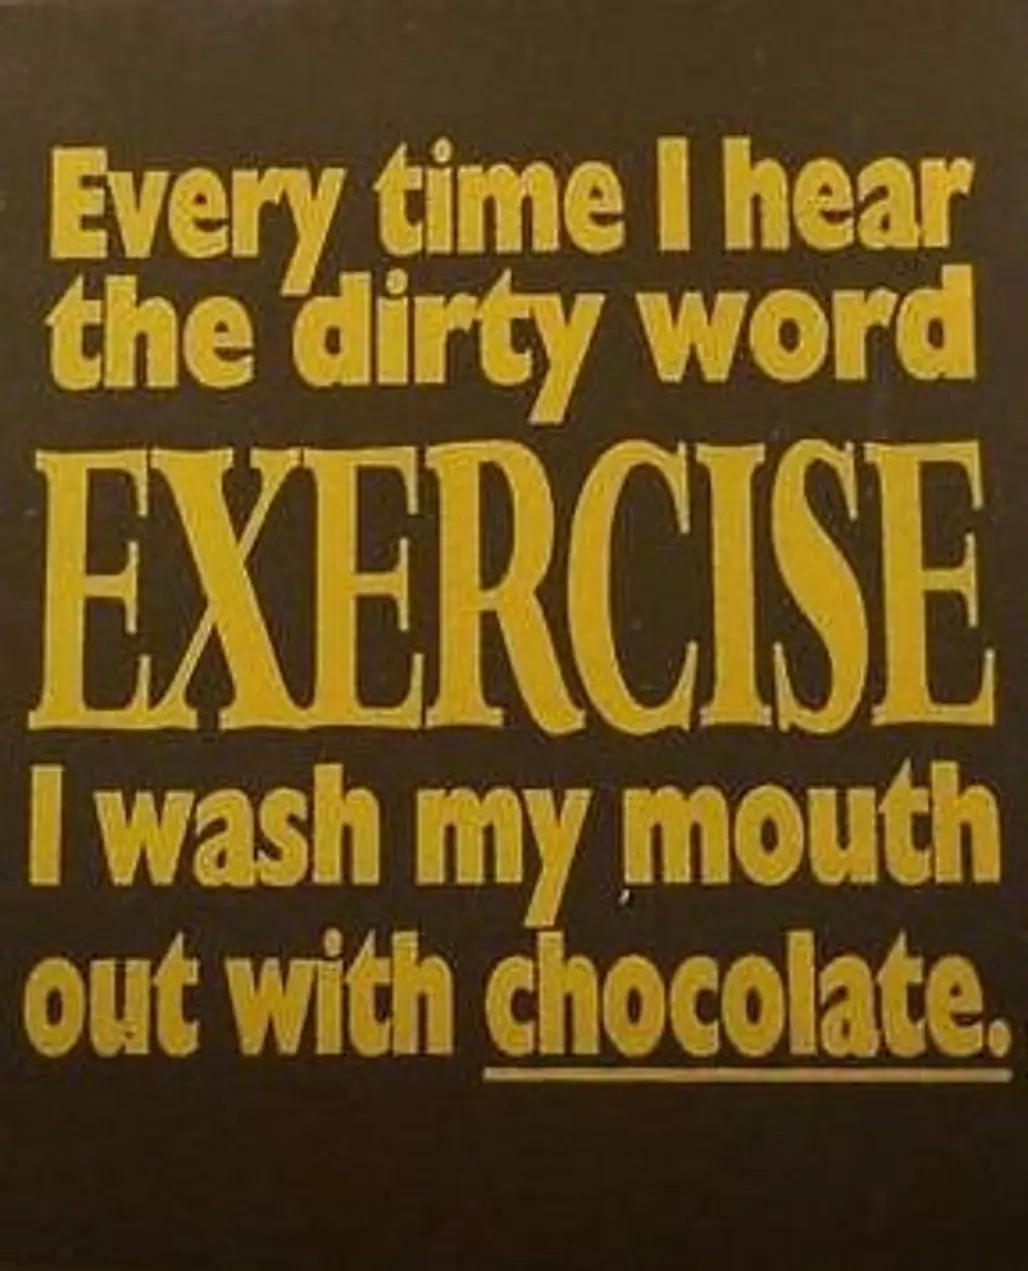 Chocolate Vs Exercise